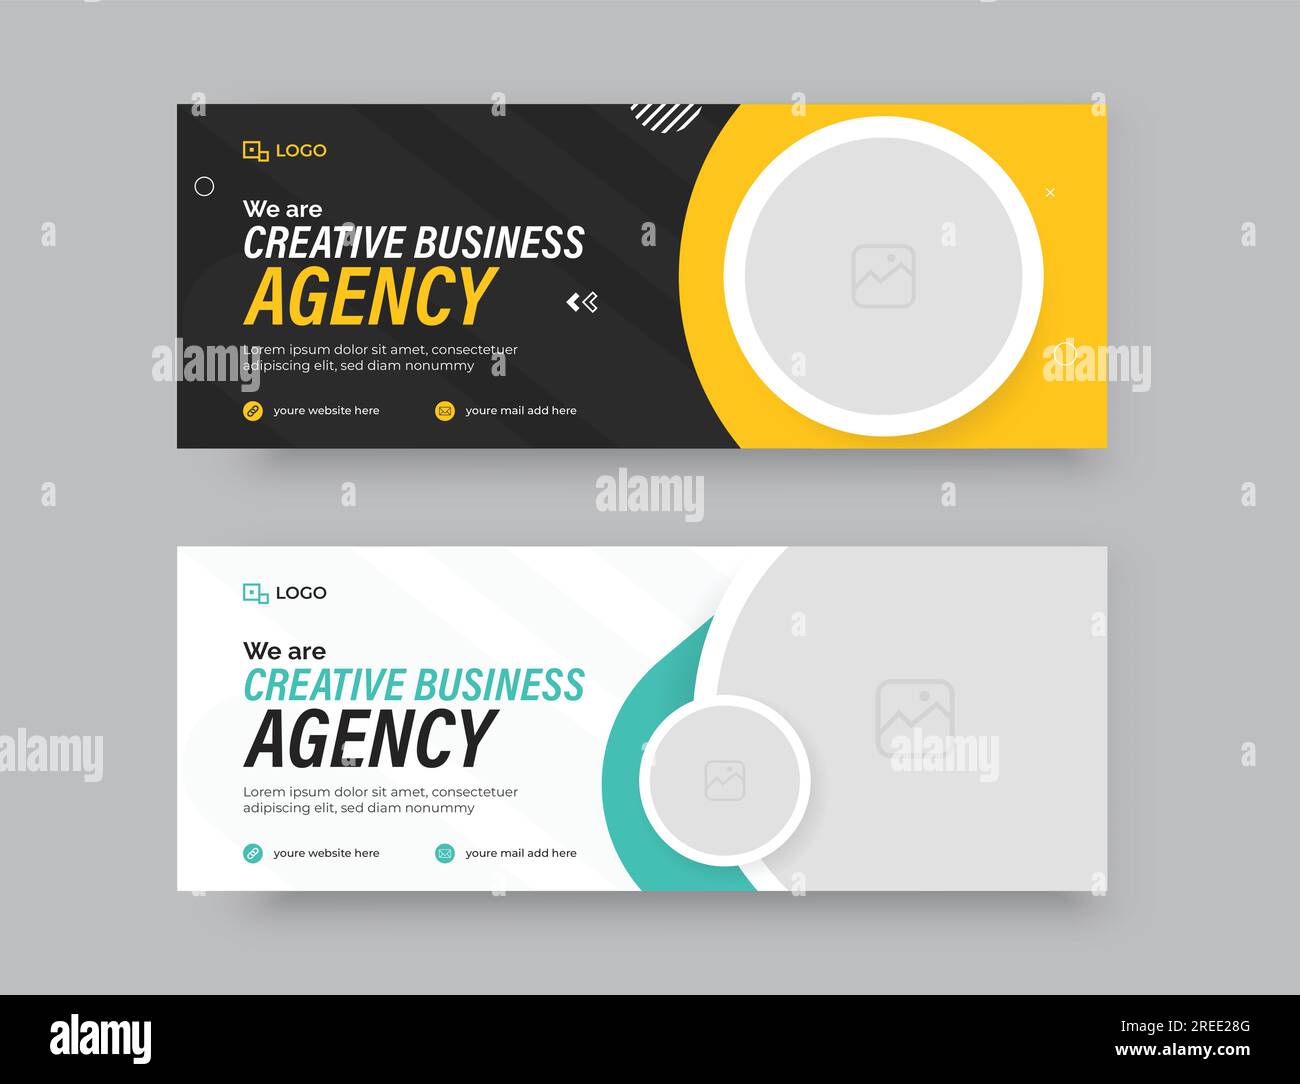 Moderno modello di banner Web o copertina Facebook per il marketing di Creative Business Agency professionale. Illustrazione Vettoriale